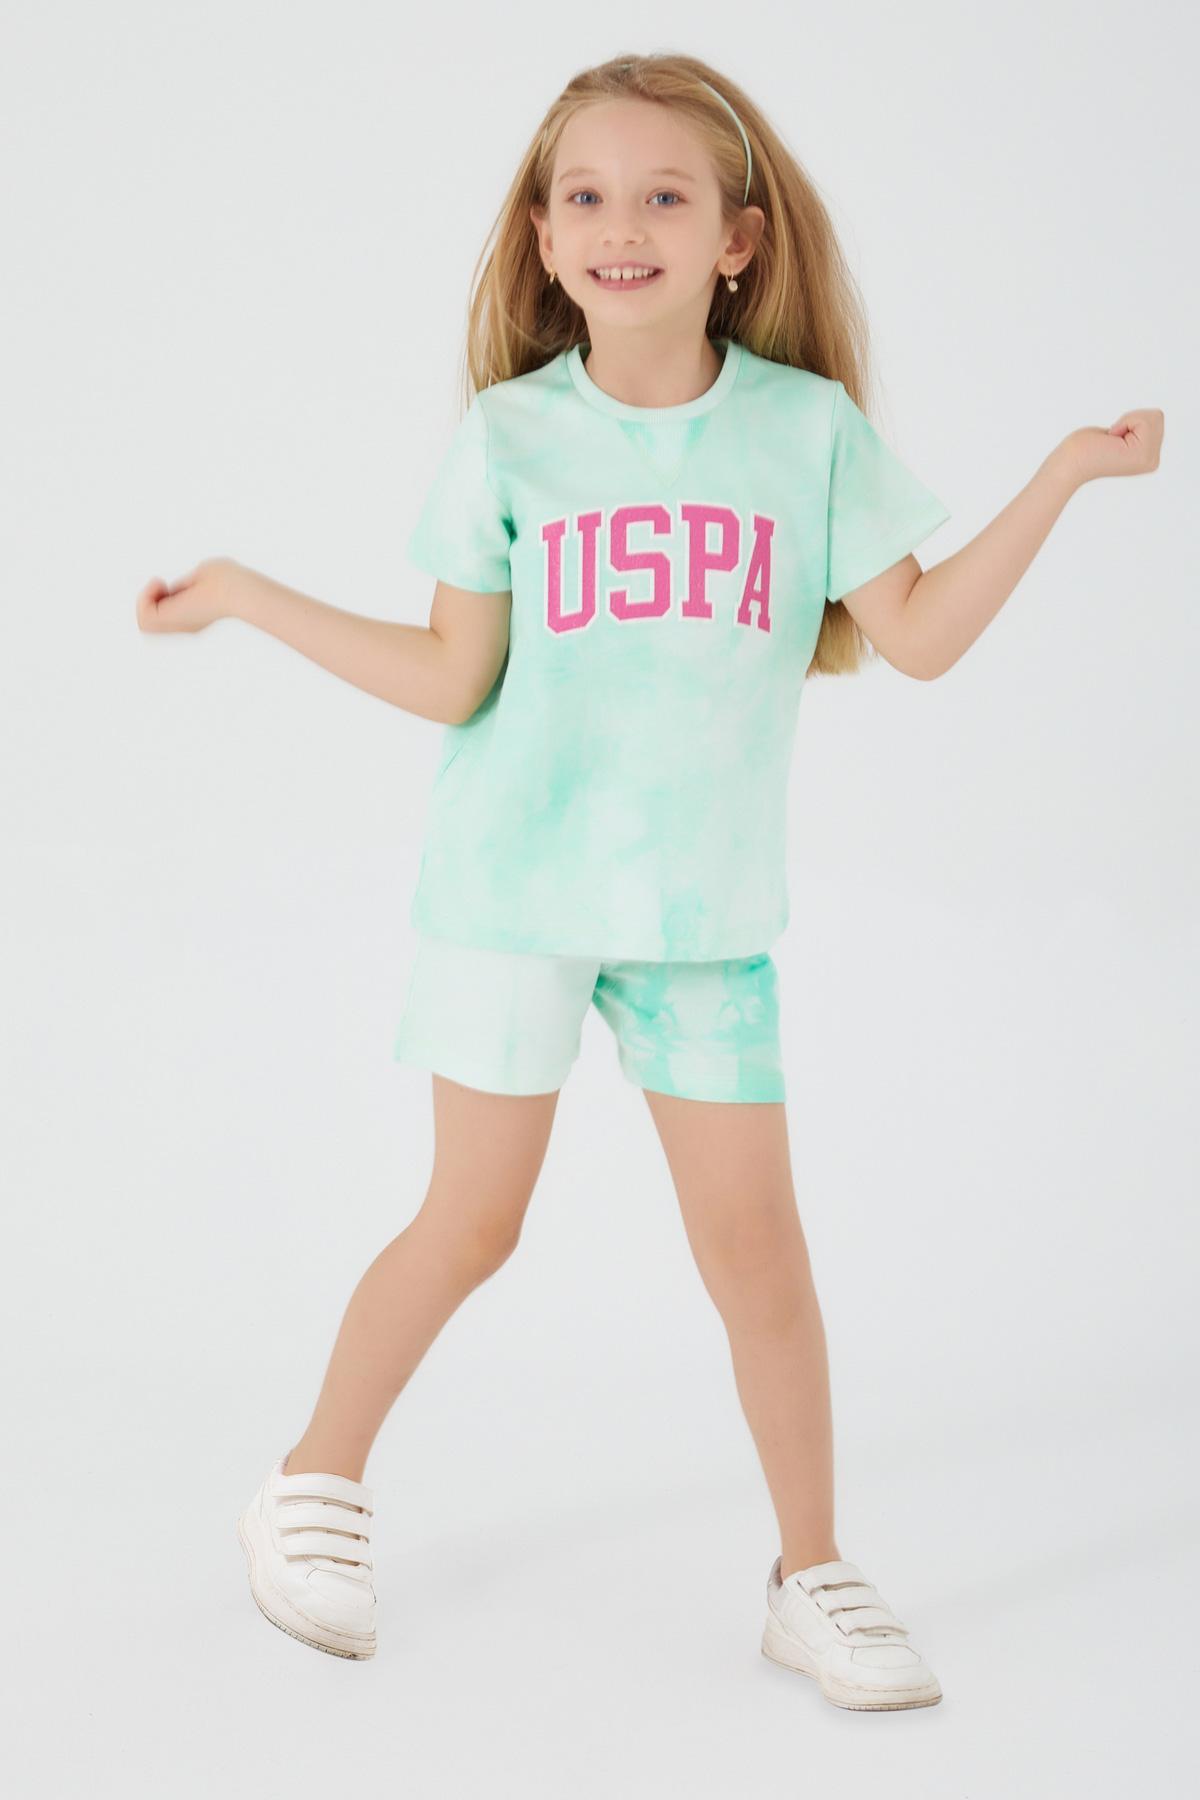 Selected image for U.S. POLO ASSN. Komplet šorc i majica za devojčice US1422-4 menta